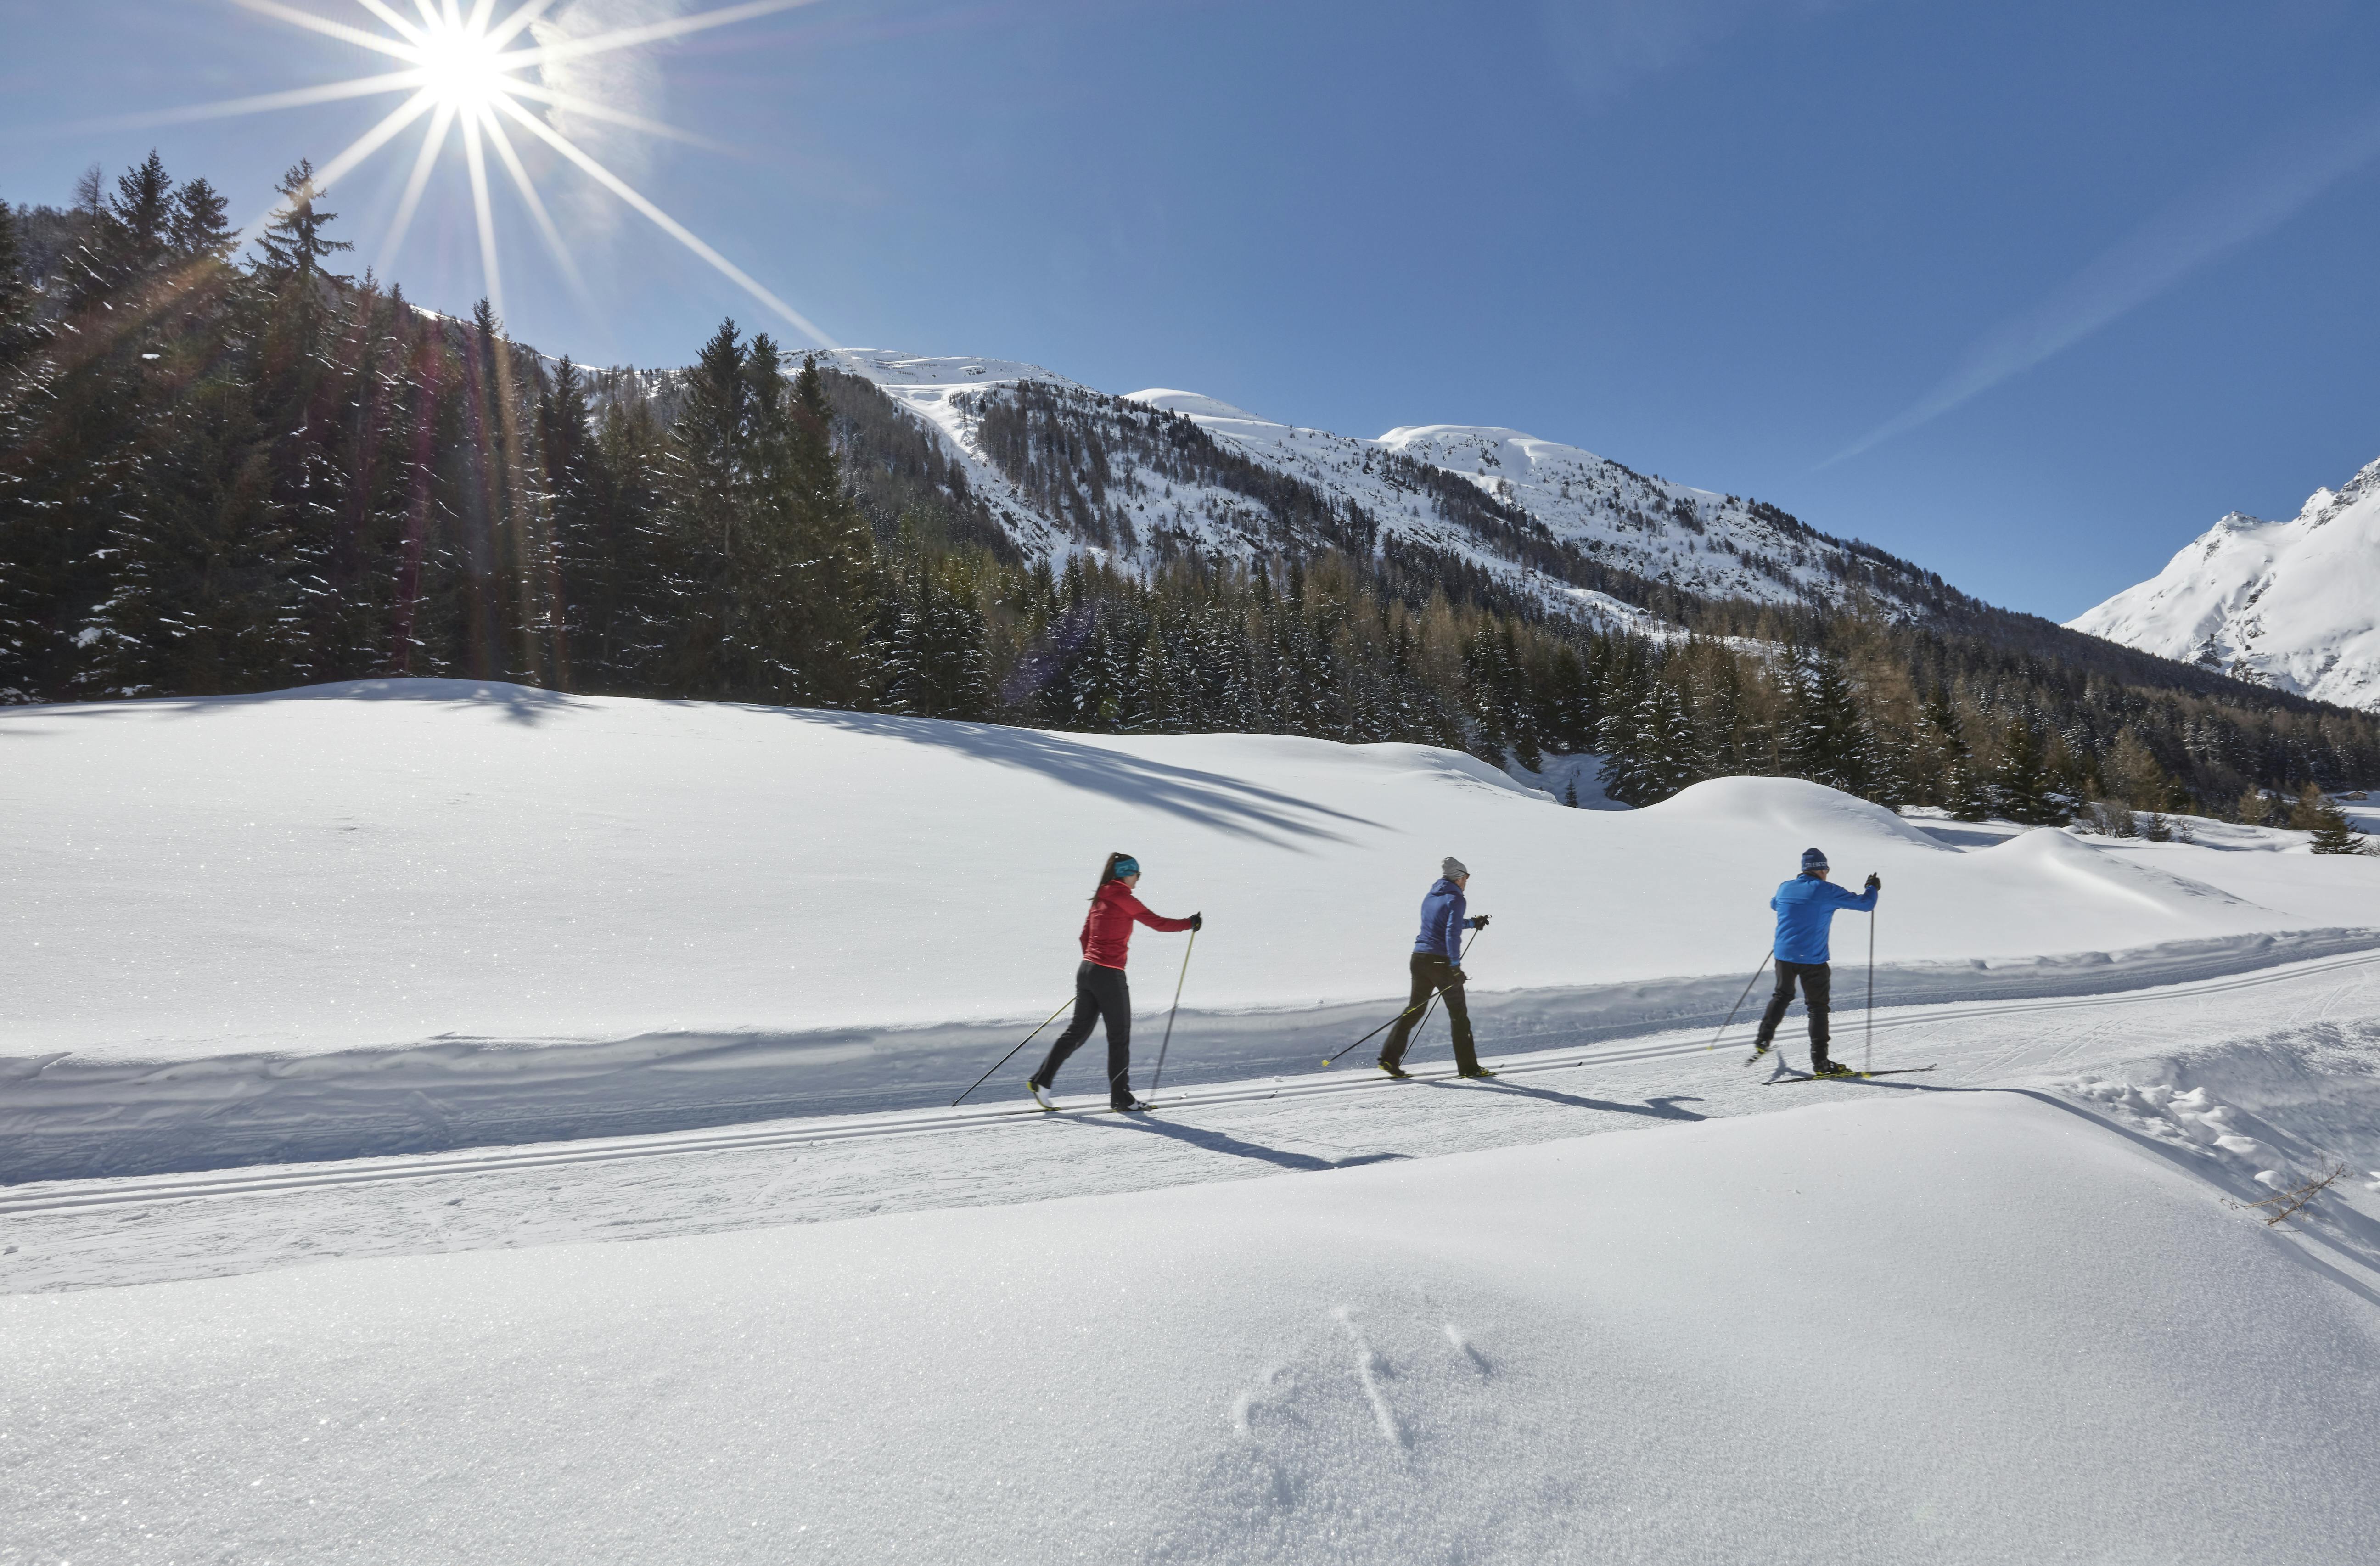 Murtomaahiihtäjät jonossa hiihtämässä ladulla Ischgl:ssä.